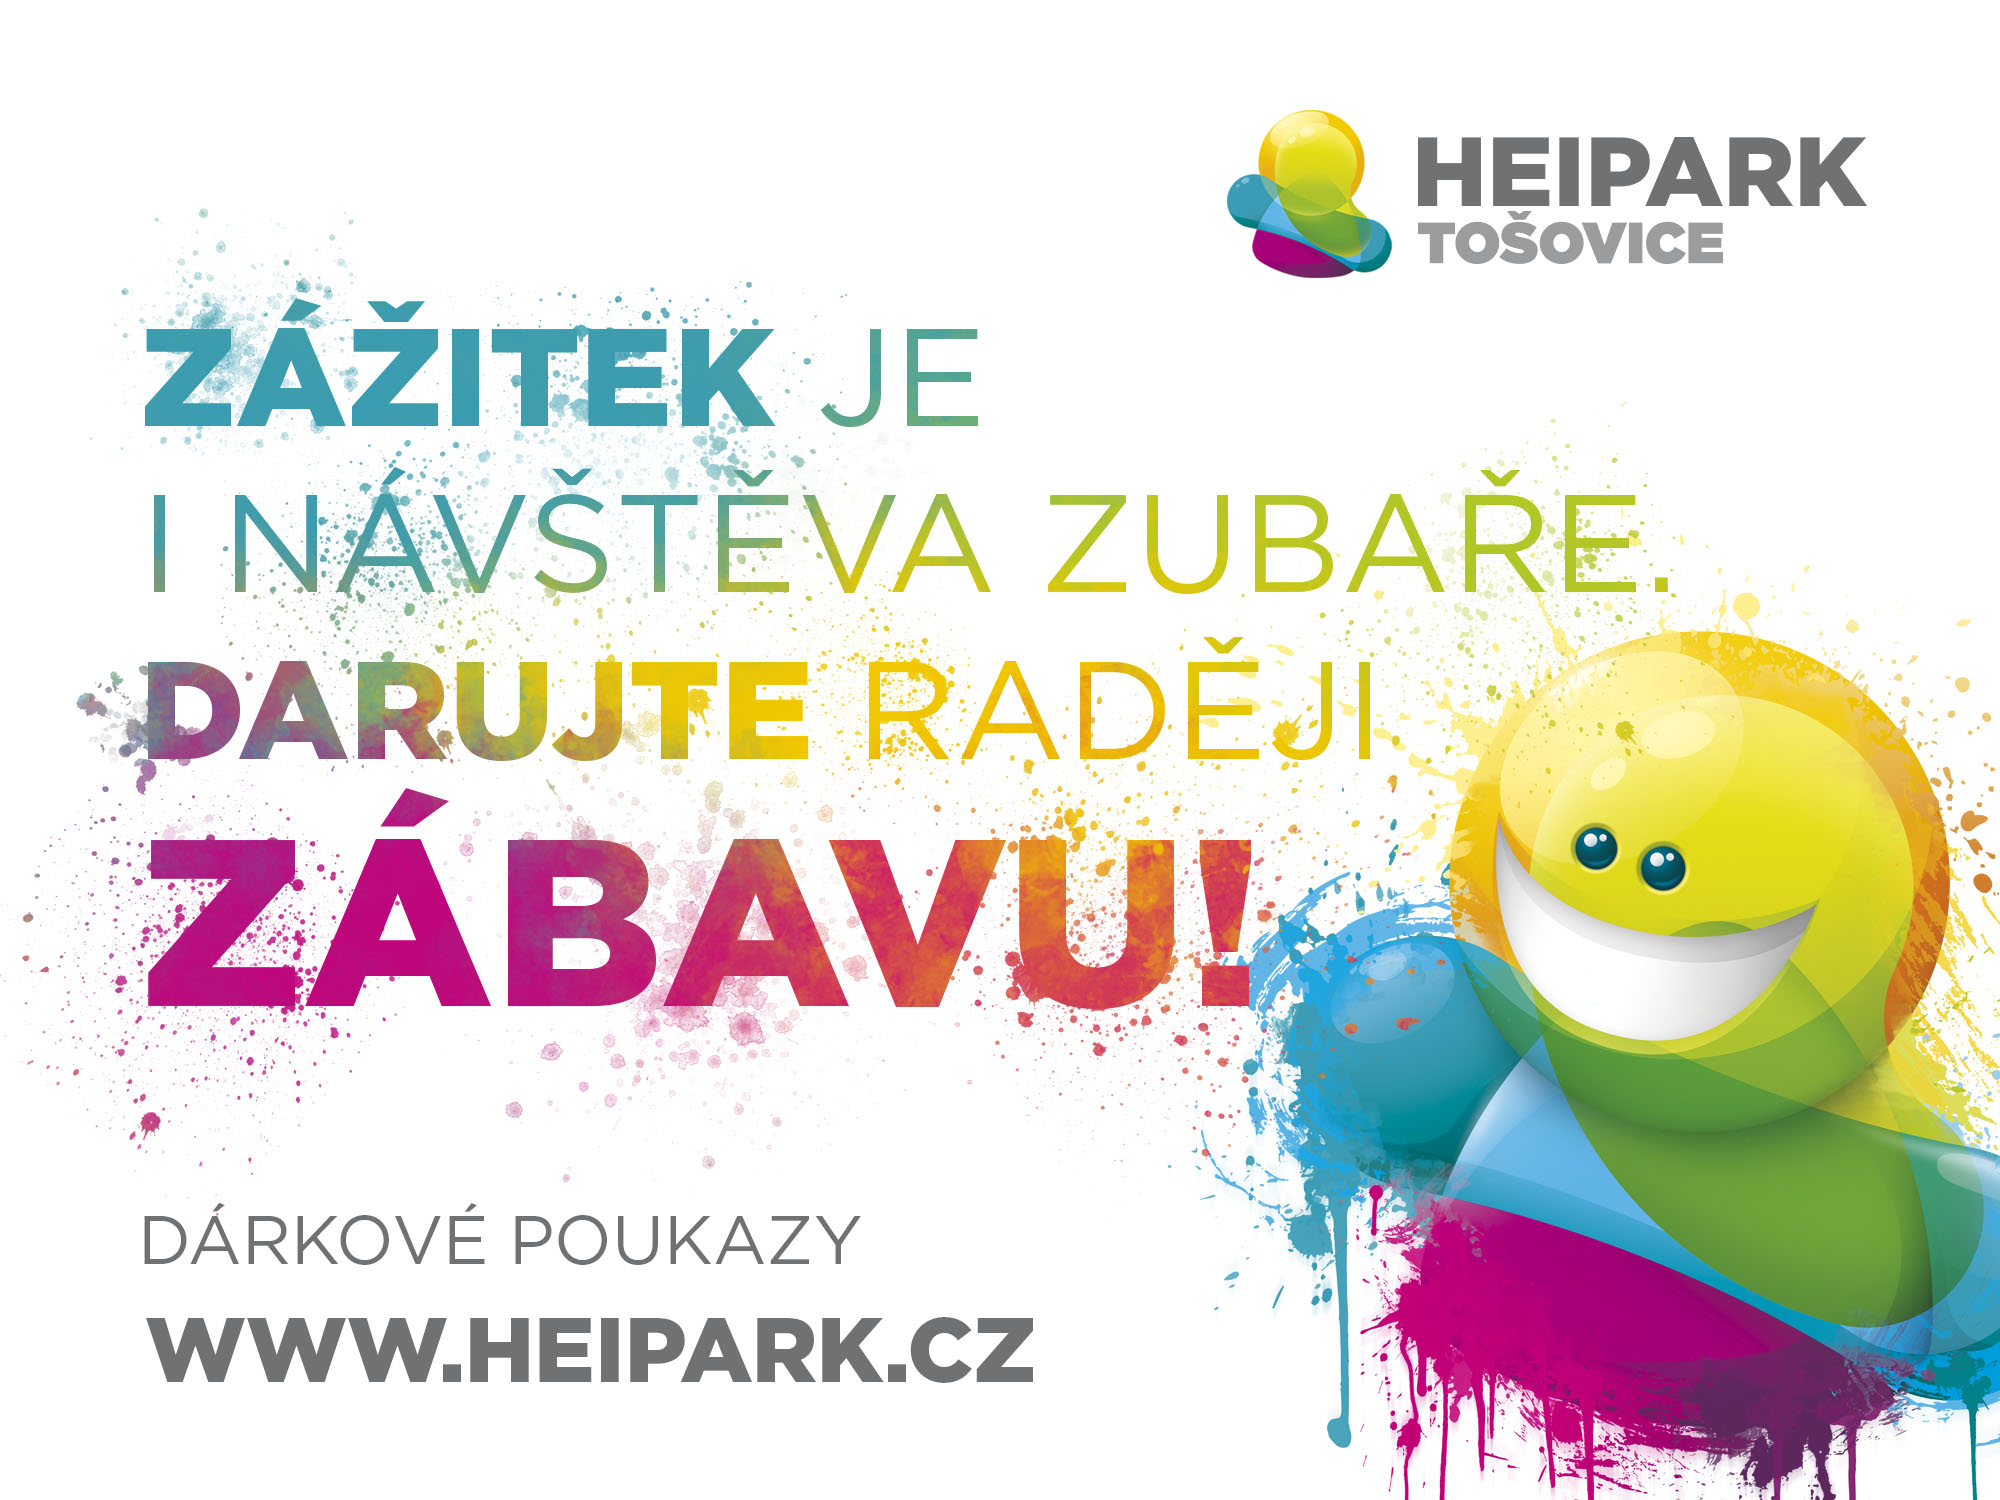 Heipark